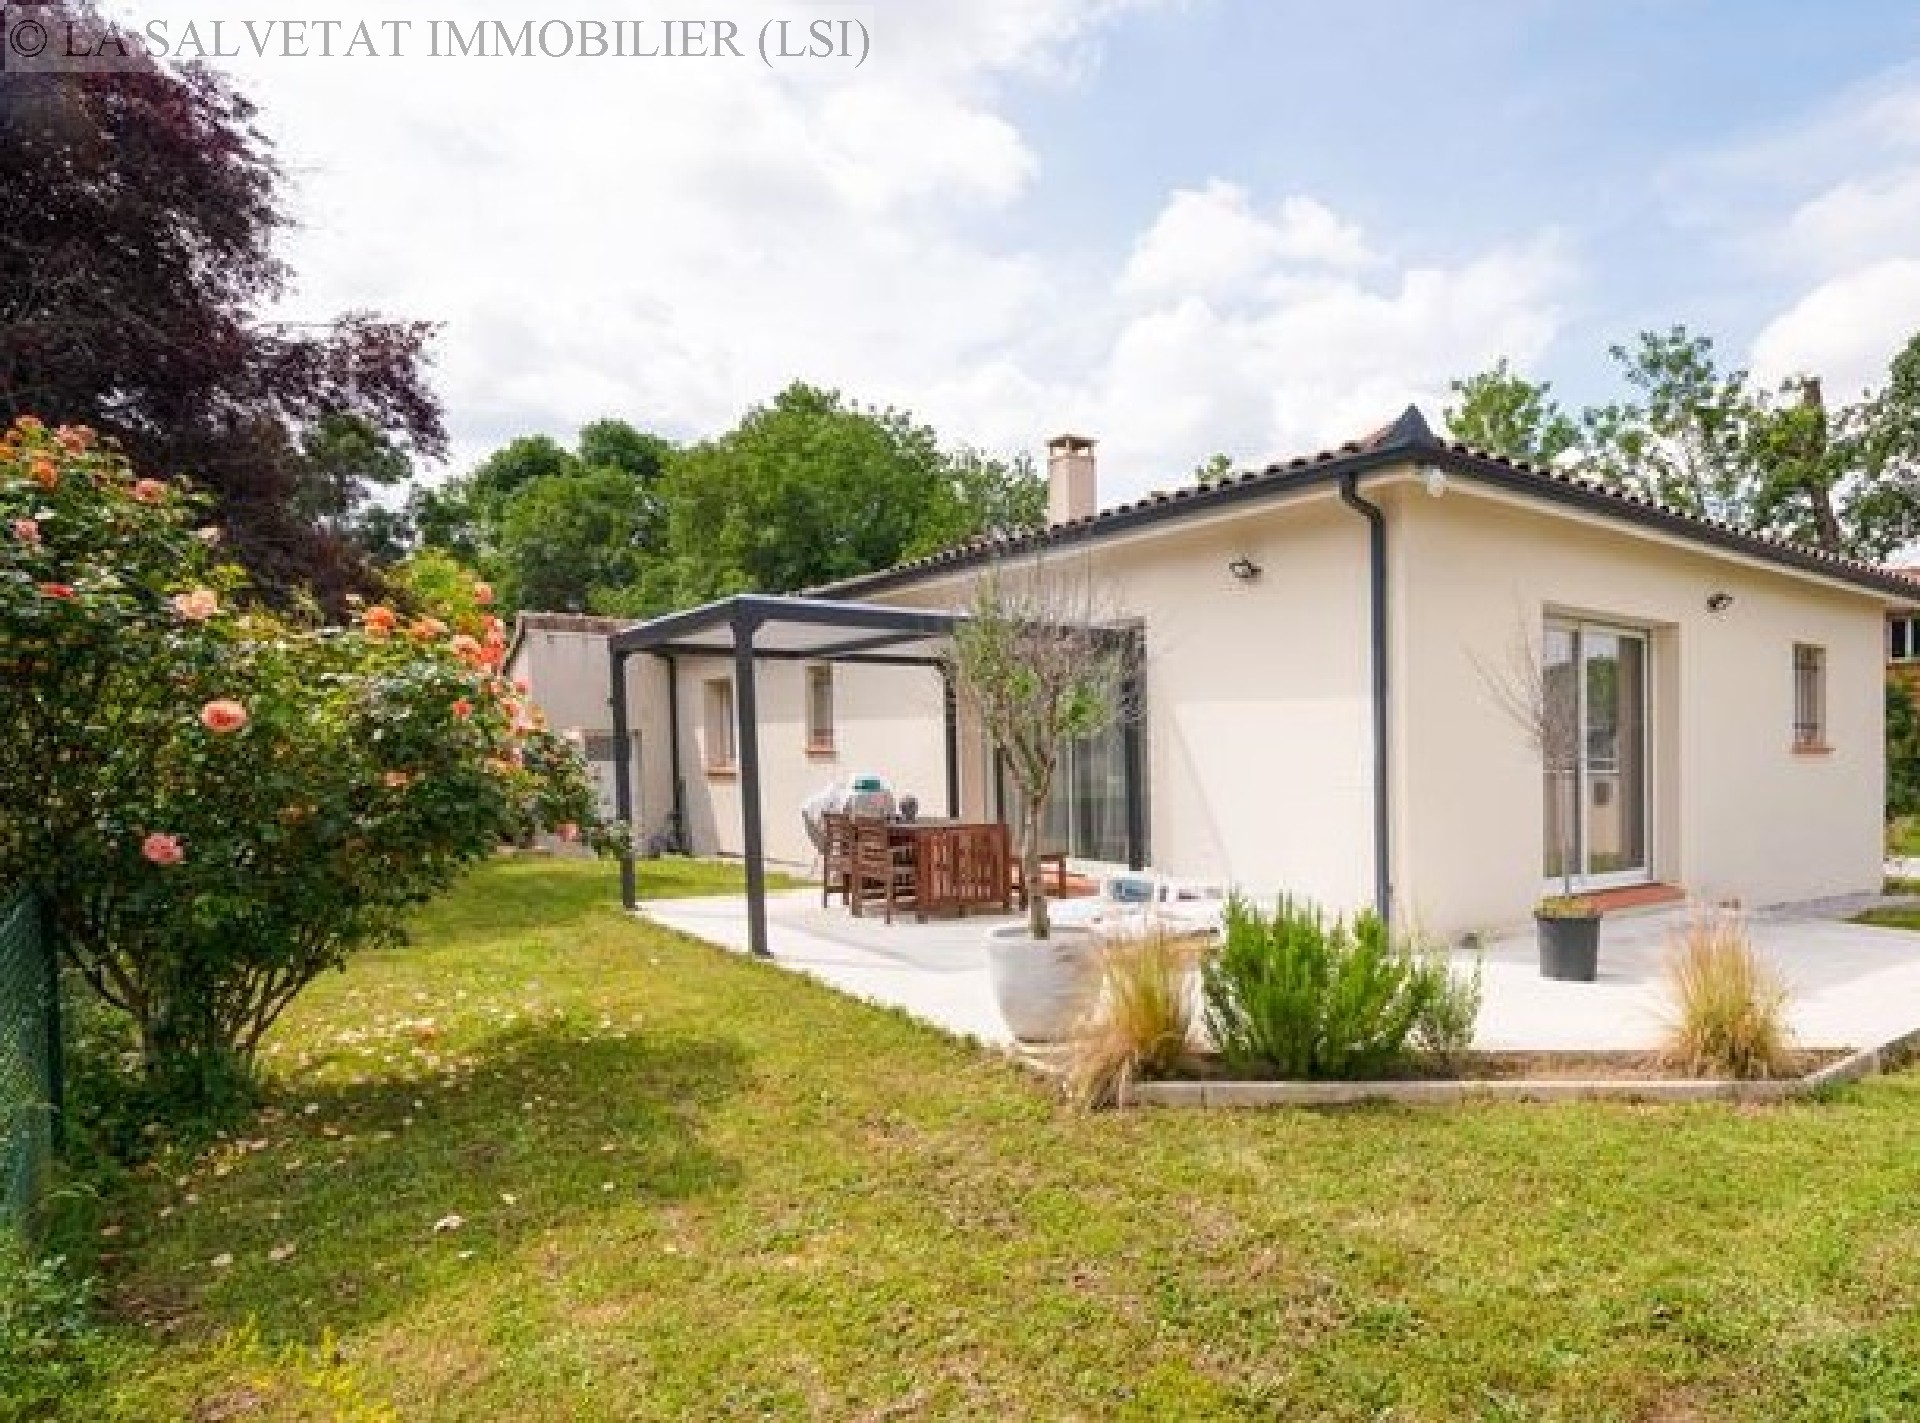 Vente maison-villa - LA SALVETAT ST GILLES<br>100 m², 4 pièces